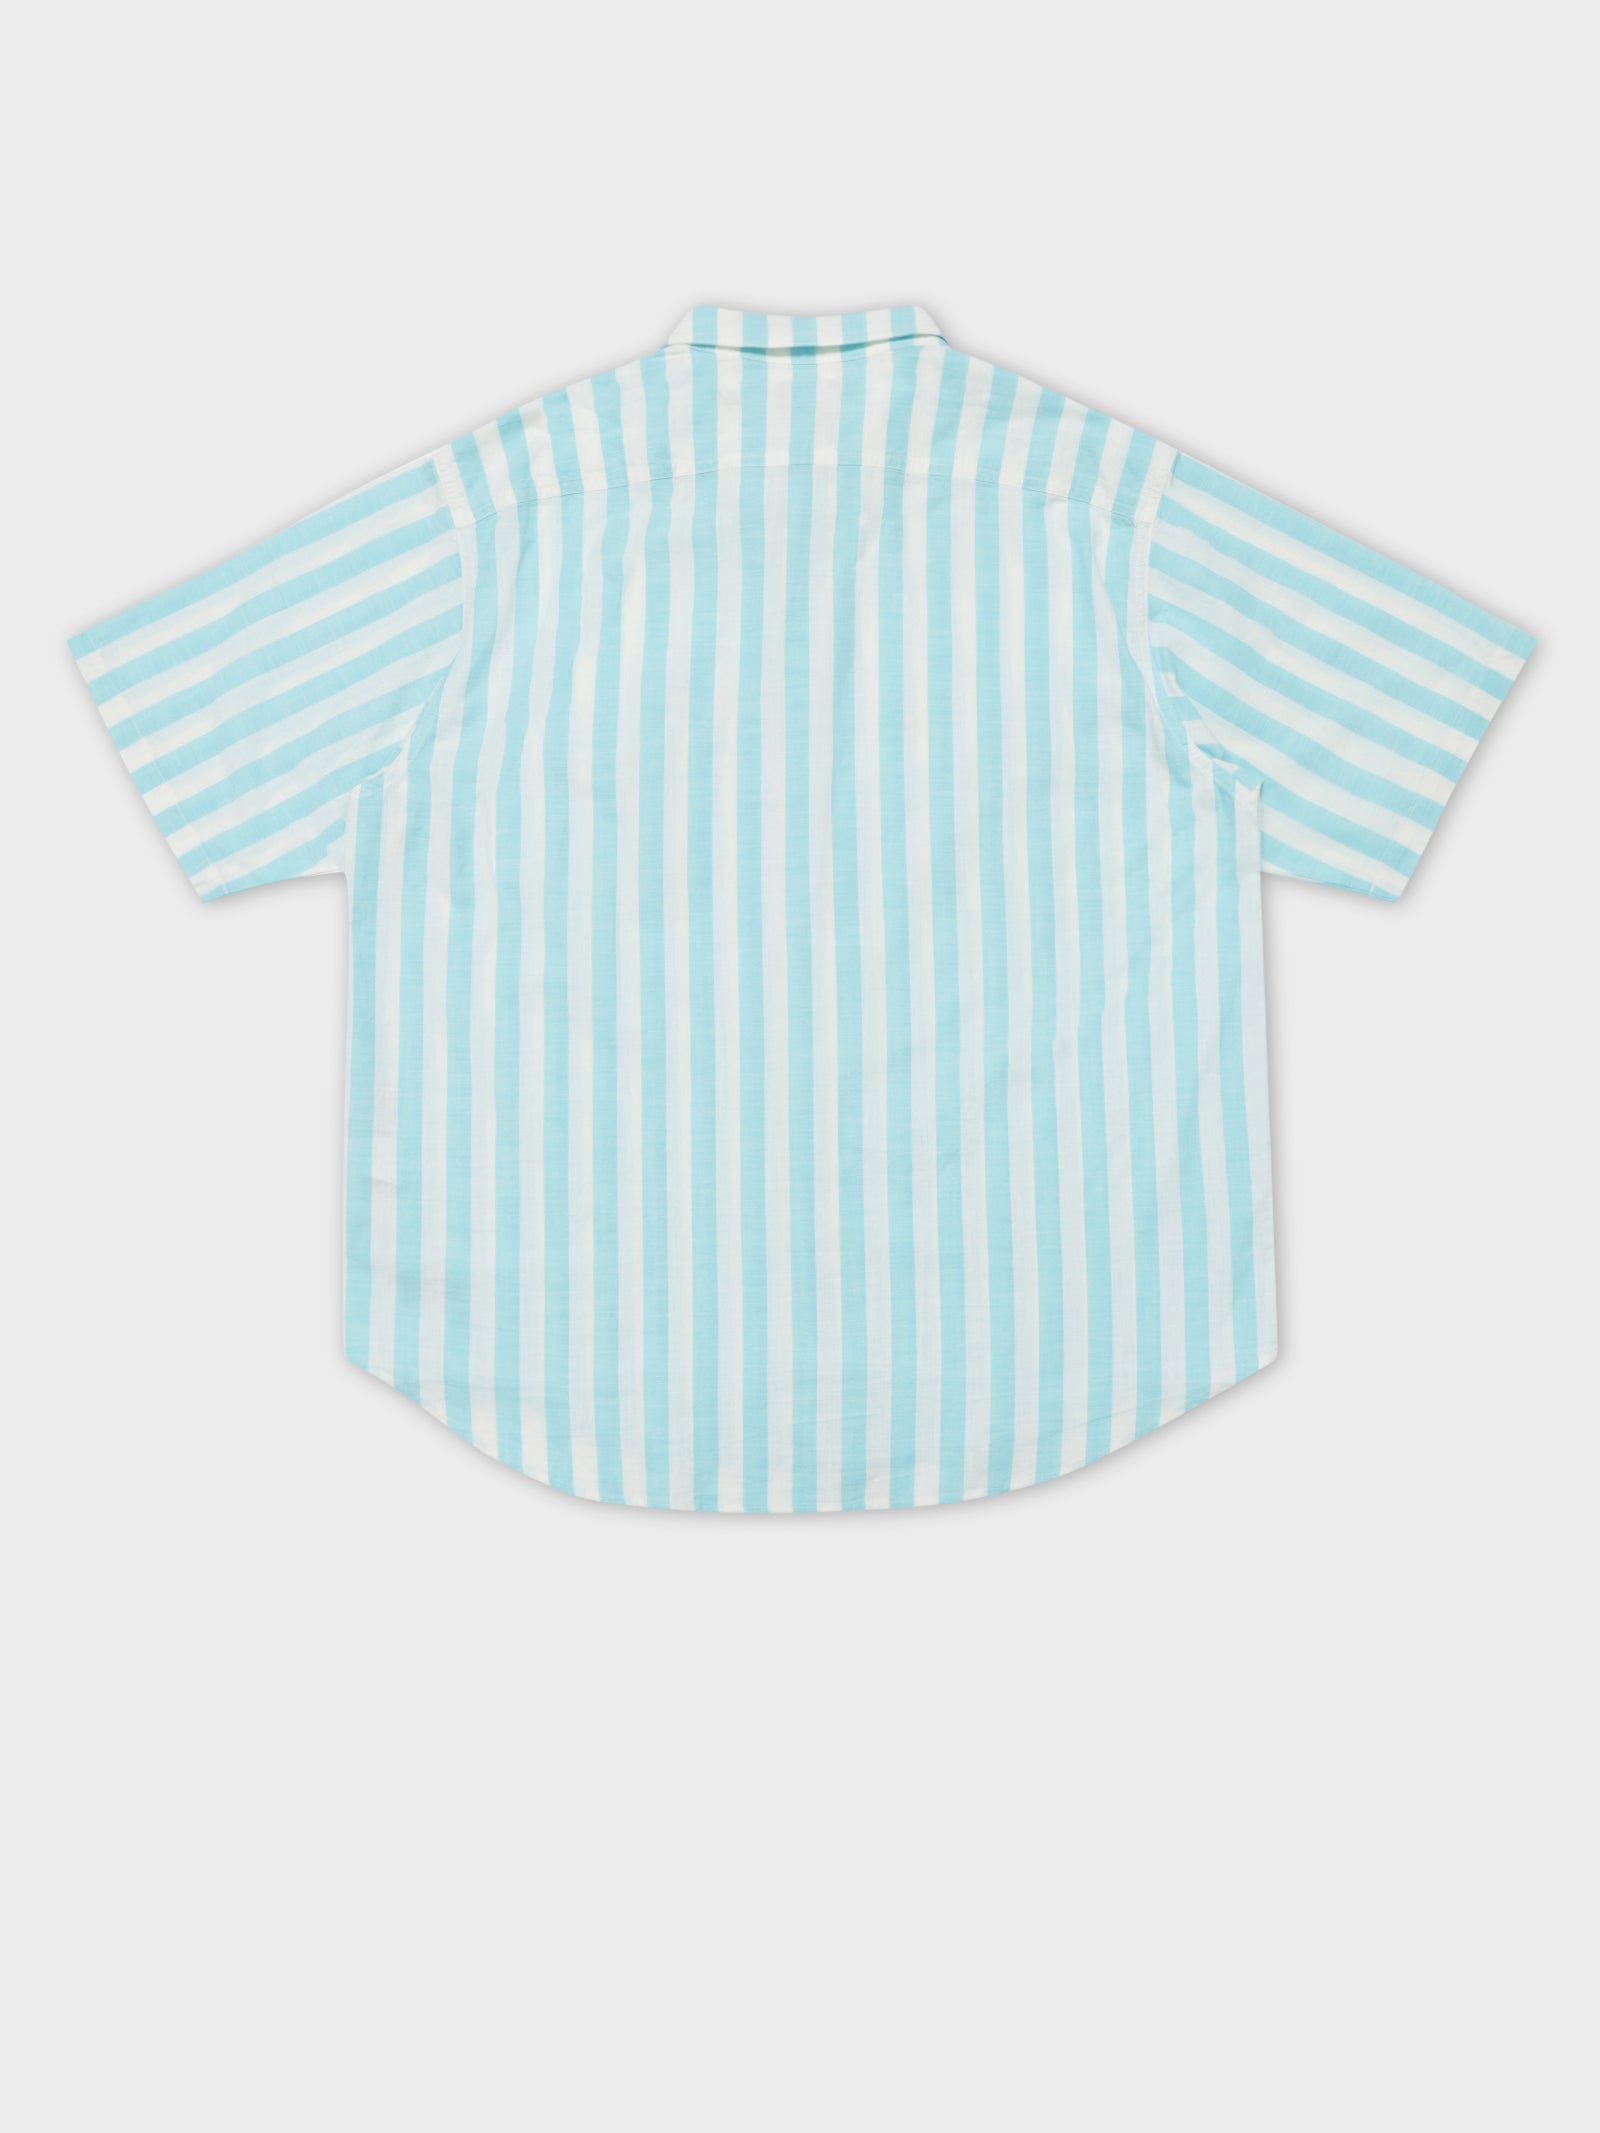 Skate Short Sleeve Woven Shirt in Blue & White